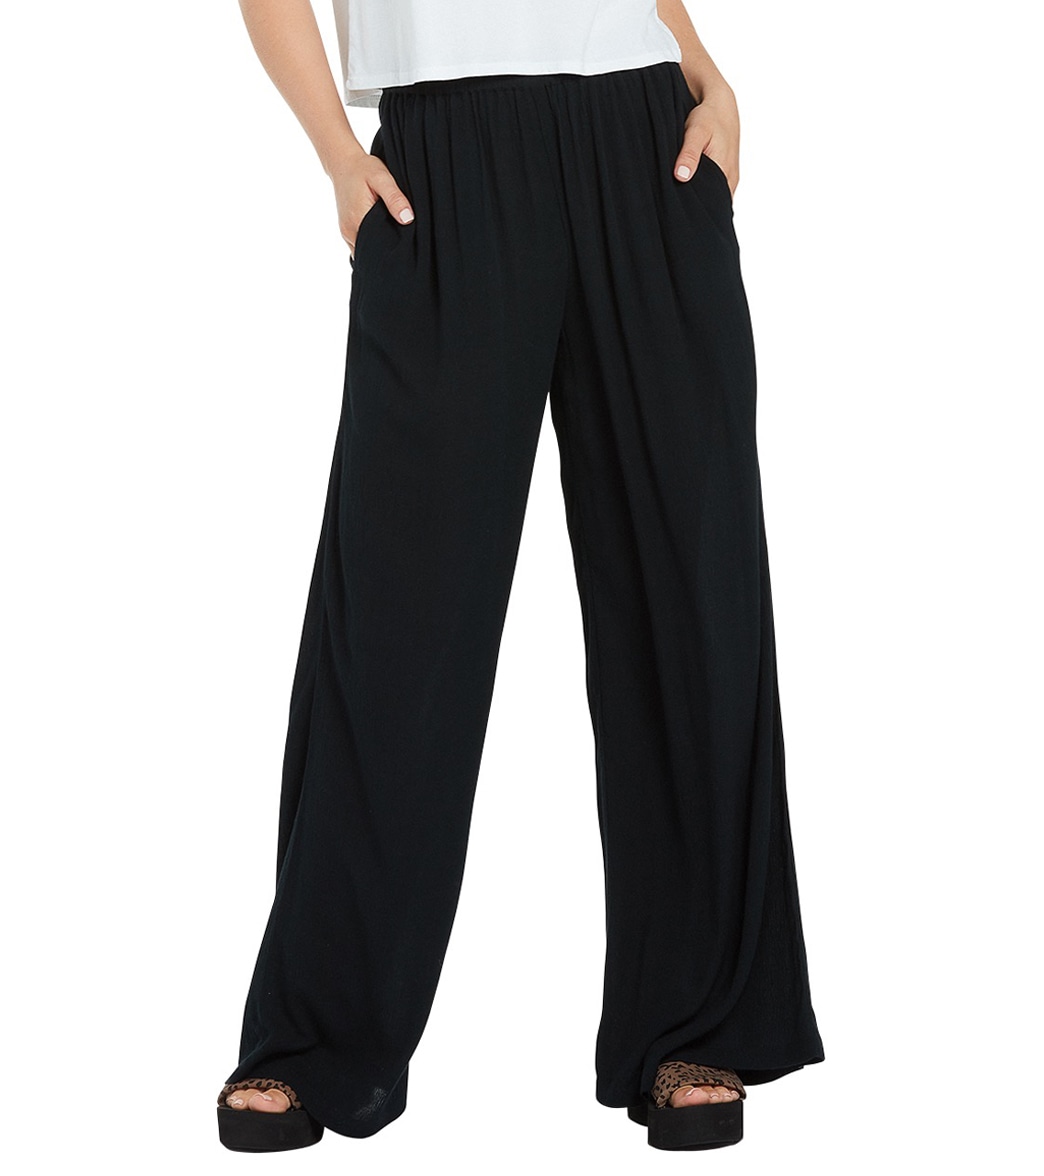 Volcom Women's Stoneshine Junki Pants - Black Large - Swimoutlet.com